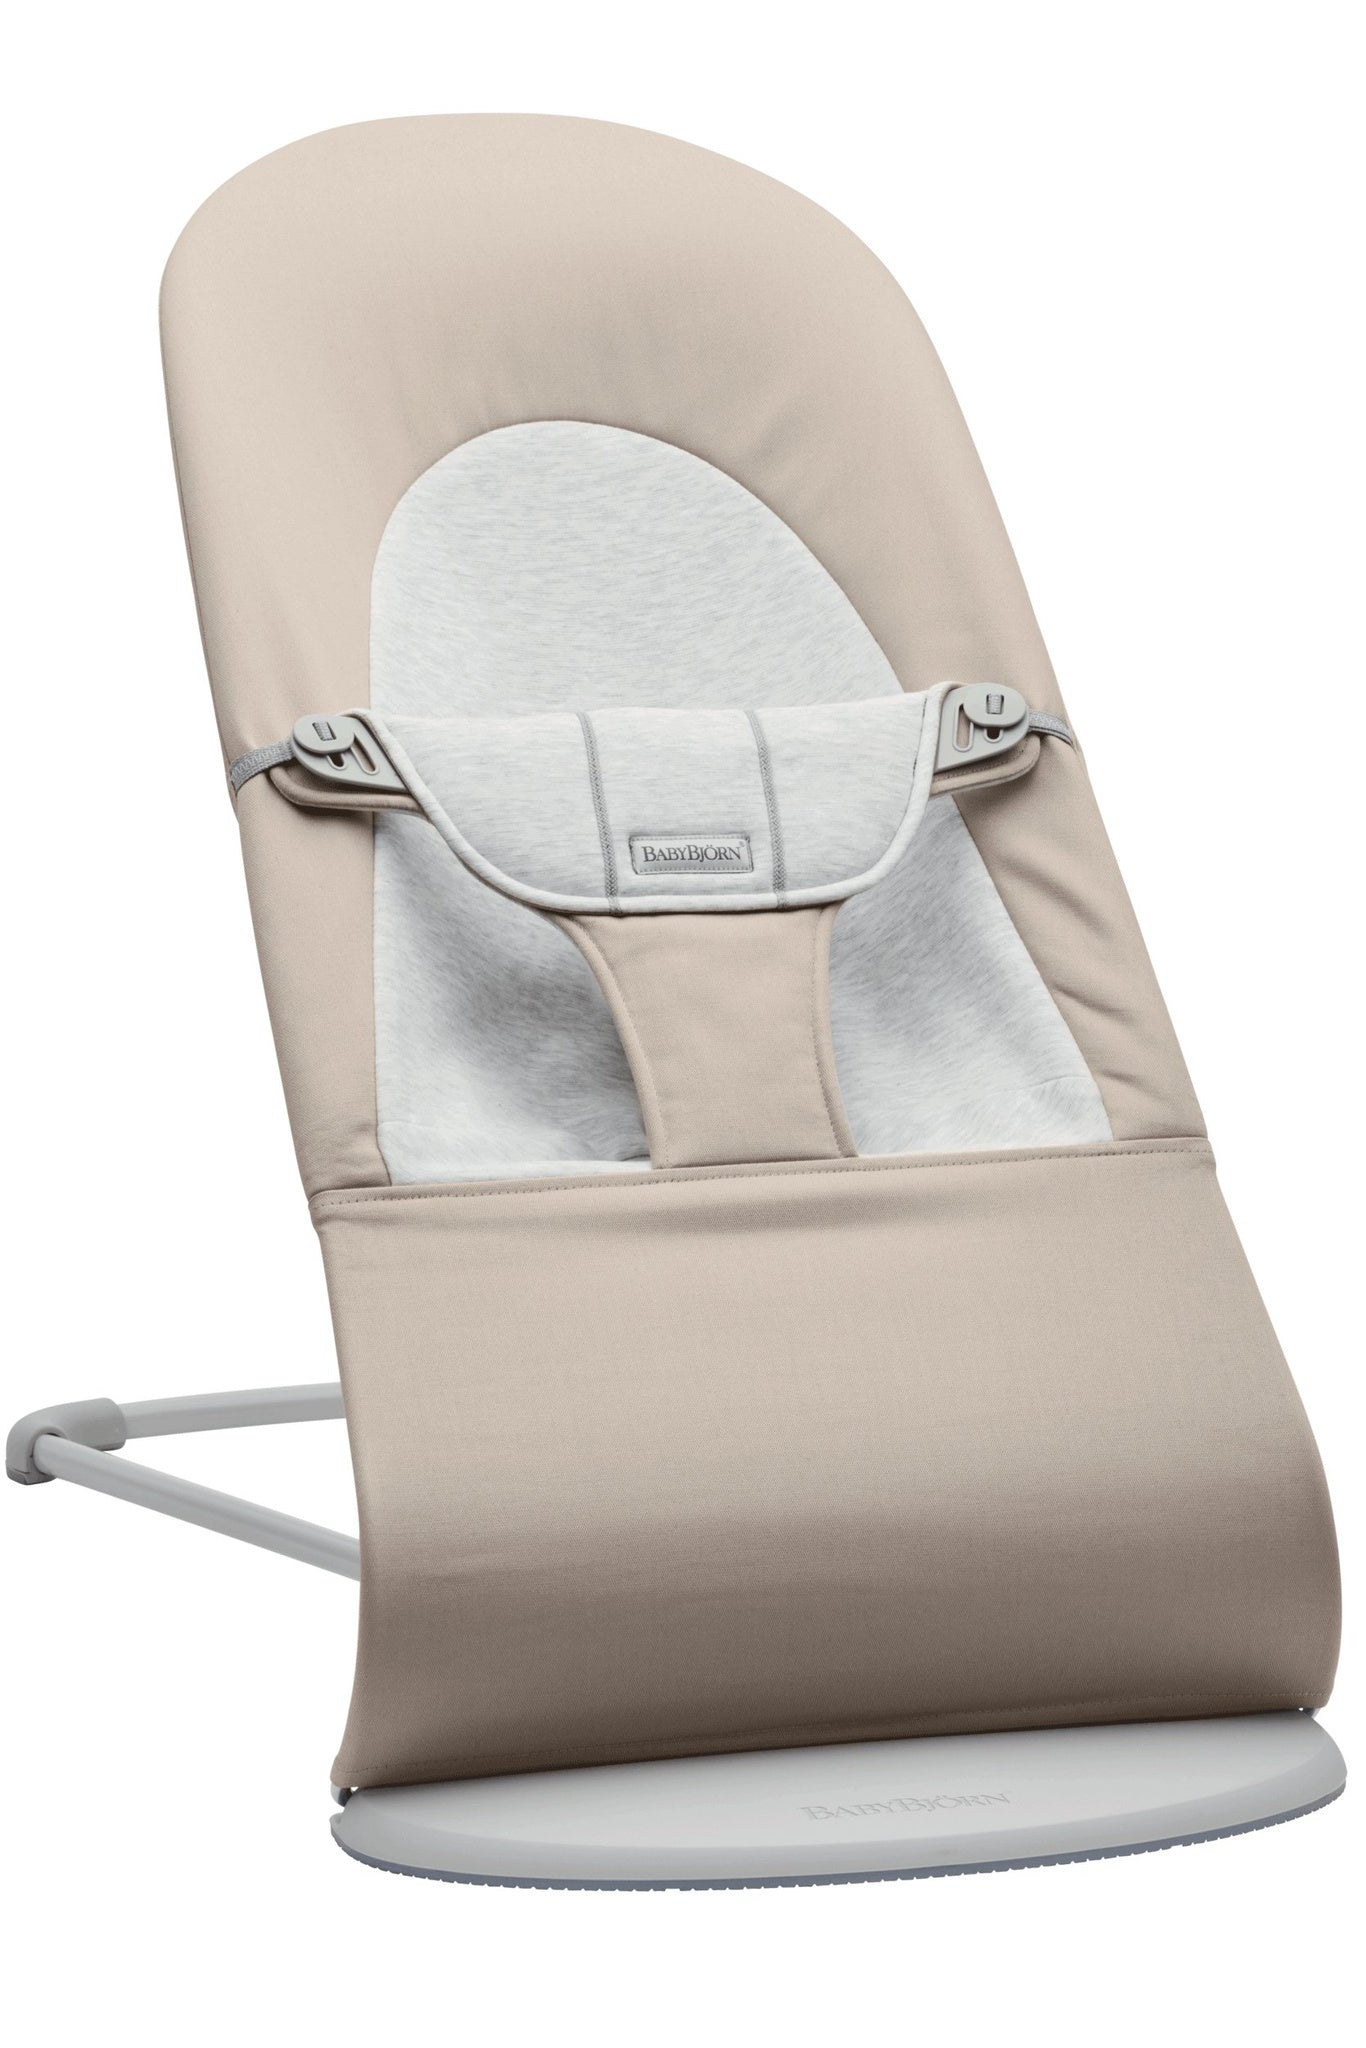 Babybjorn - Balance Soft Woven/Jersey deckchair - beige/gray